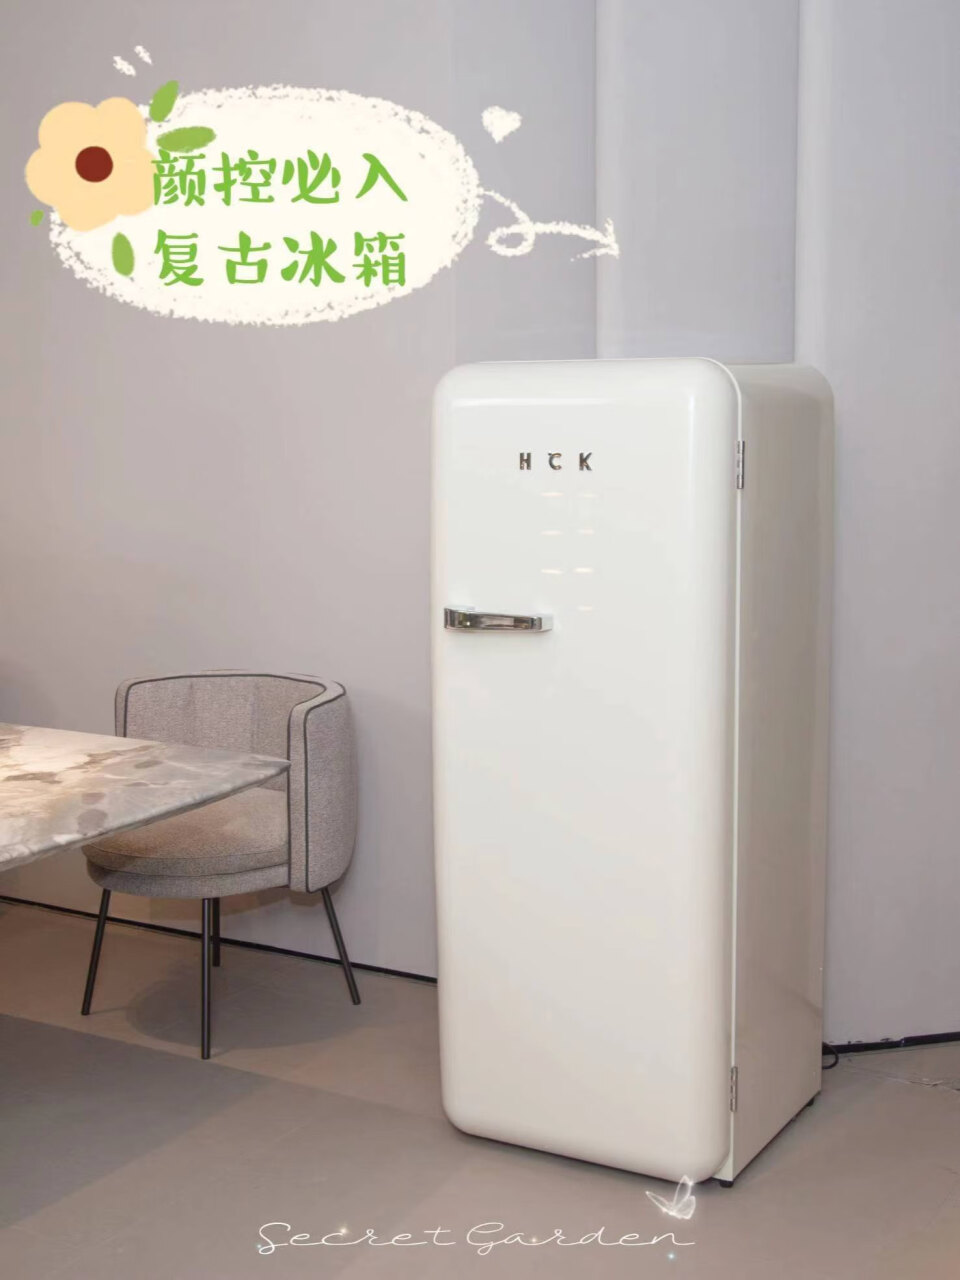 哈士奇复古冰箱大容量一级能效单门家用独立冷藏冷冻母婴冰箱储奶阴凉柜BC-130GGA浅黄色(哈士奇复古小冰箱),第4张